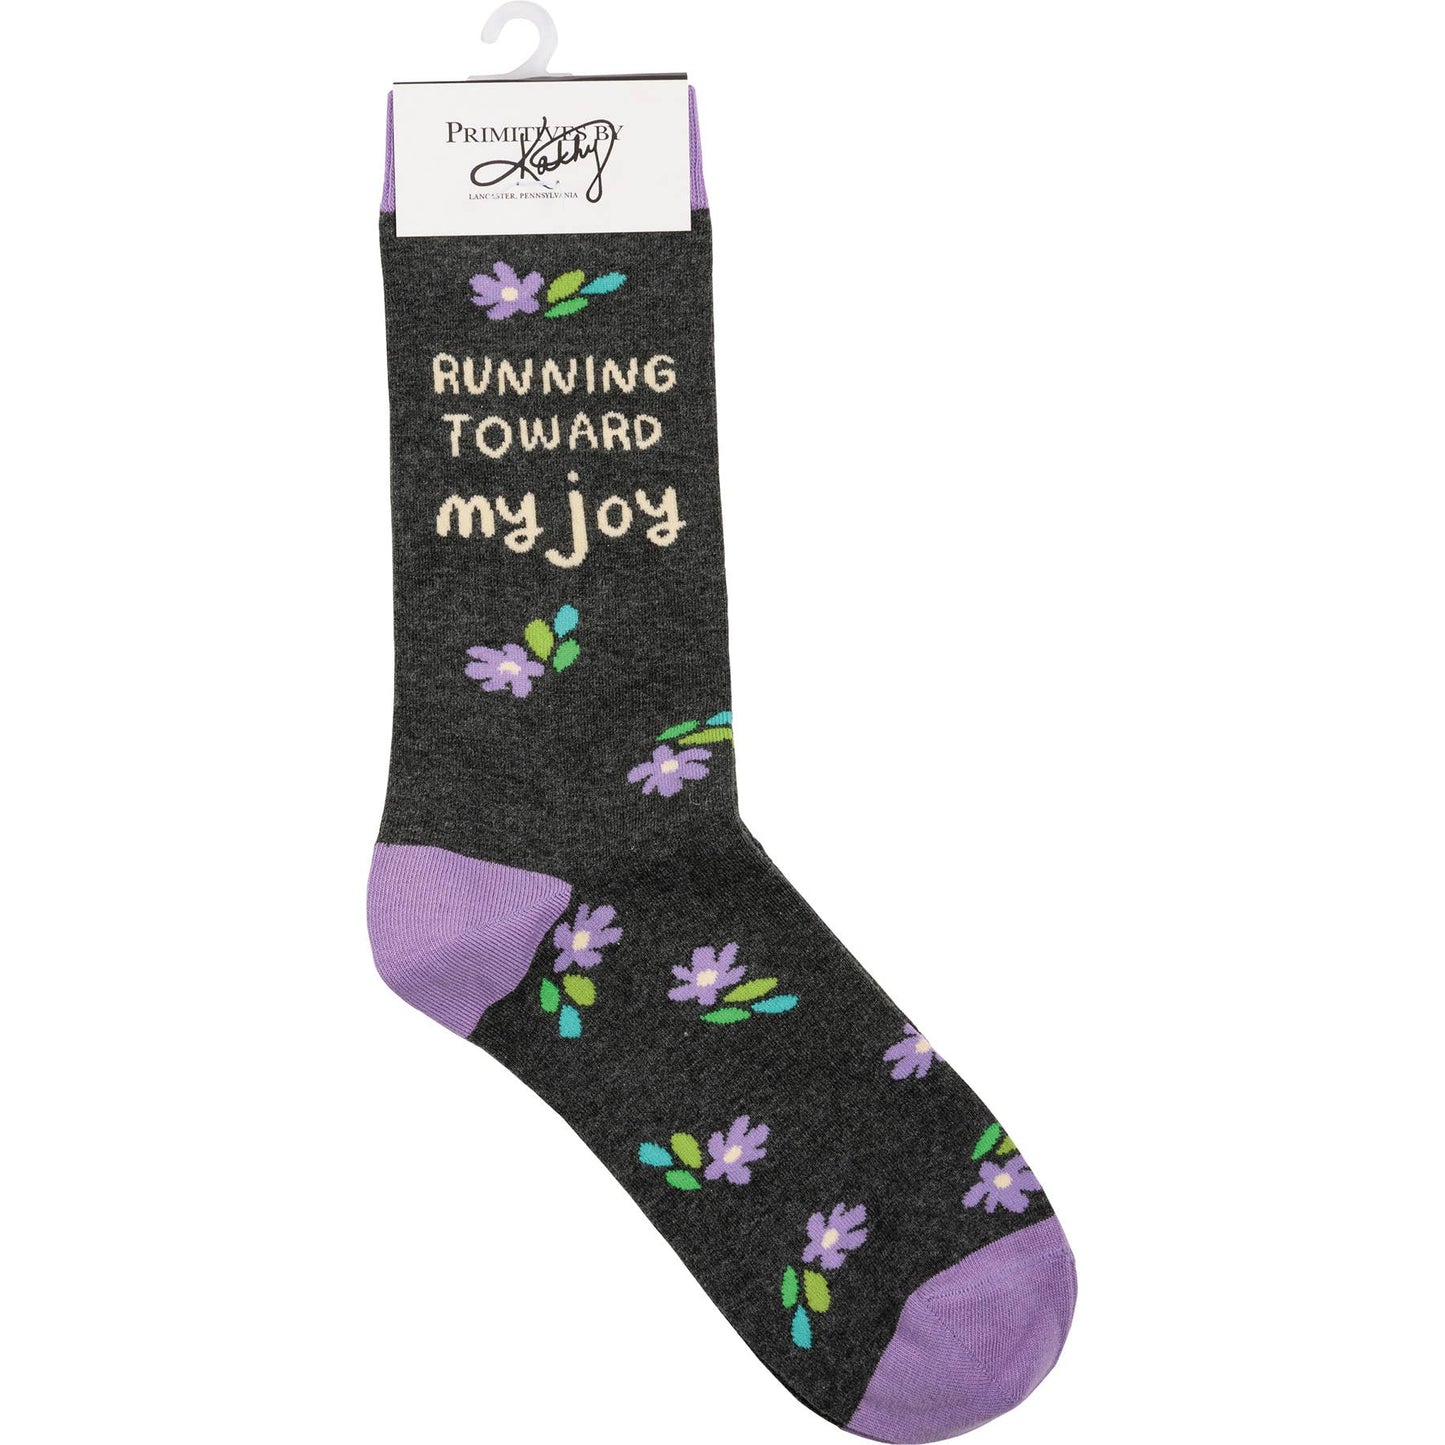 Running Toward My Joy Socks